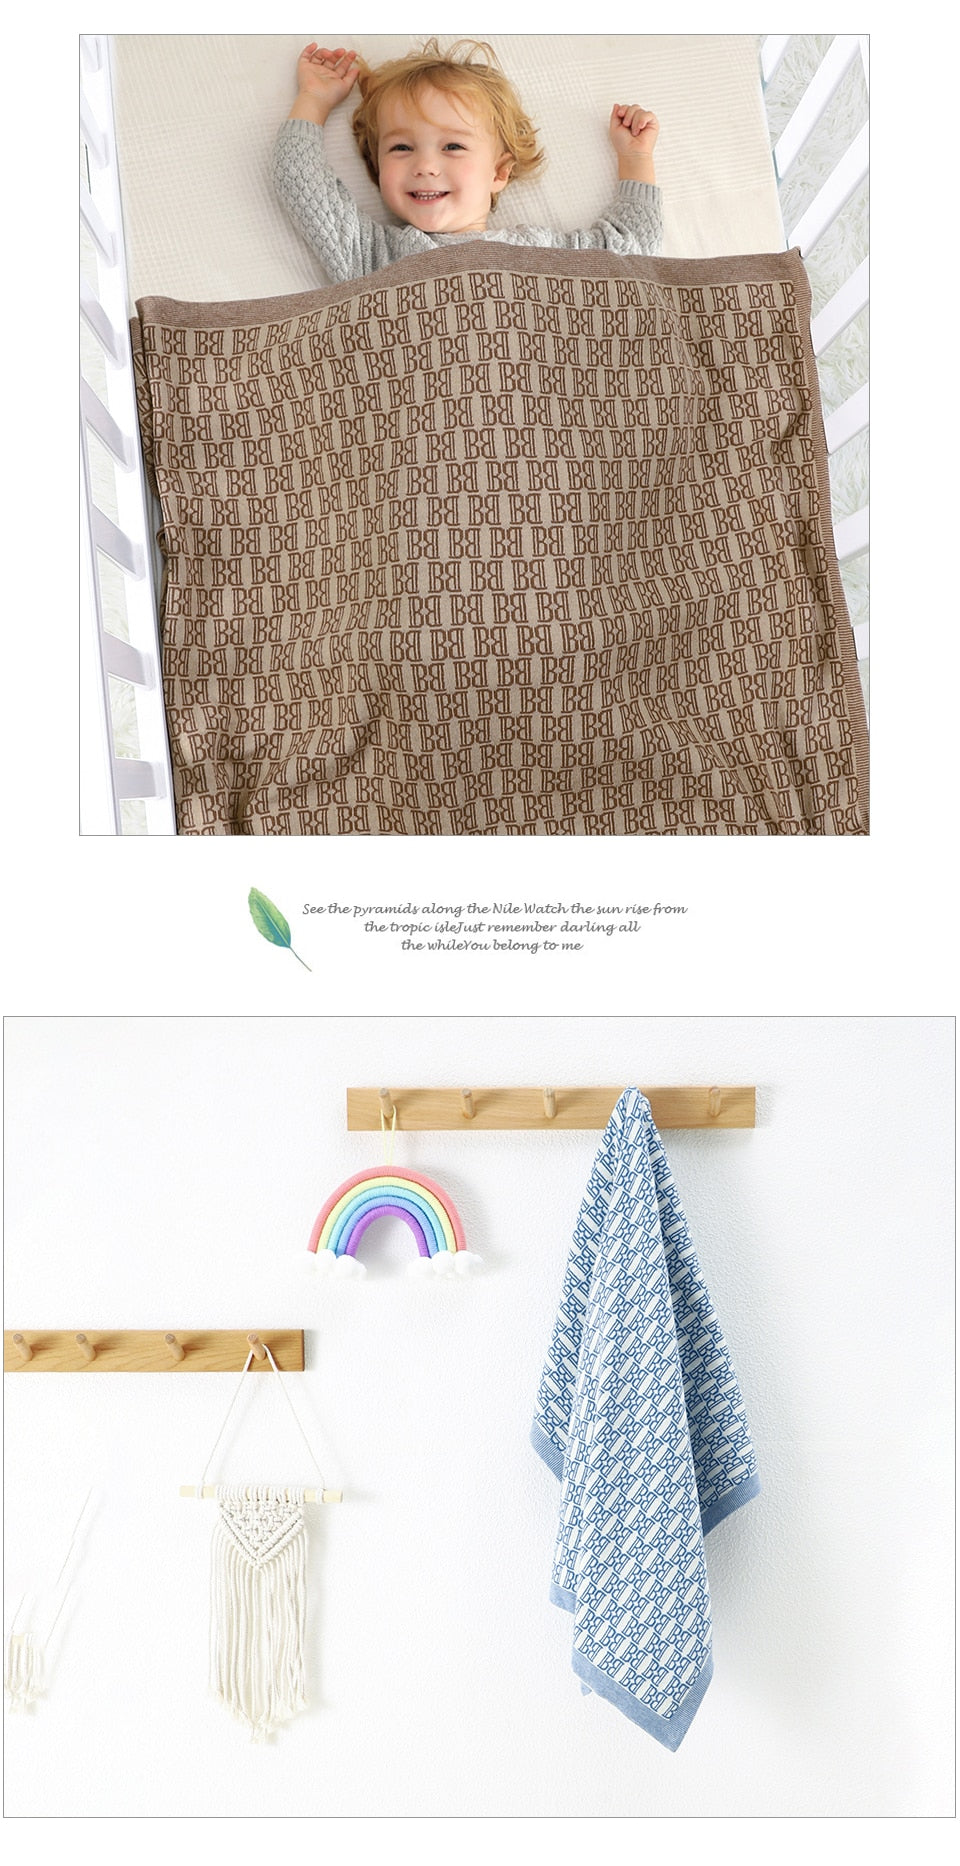 Newborn Babies' Knitted Super Soft 100% Cotton Blankets 100*80cm - Cream, Brown, Green.